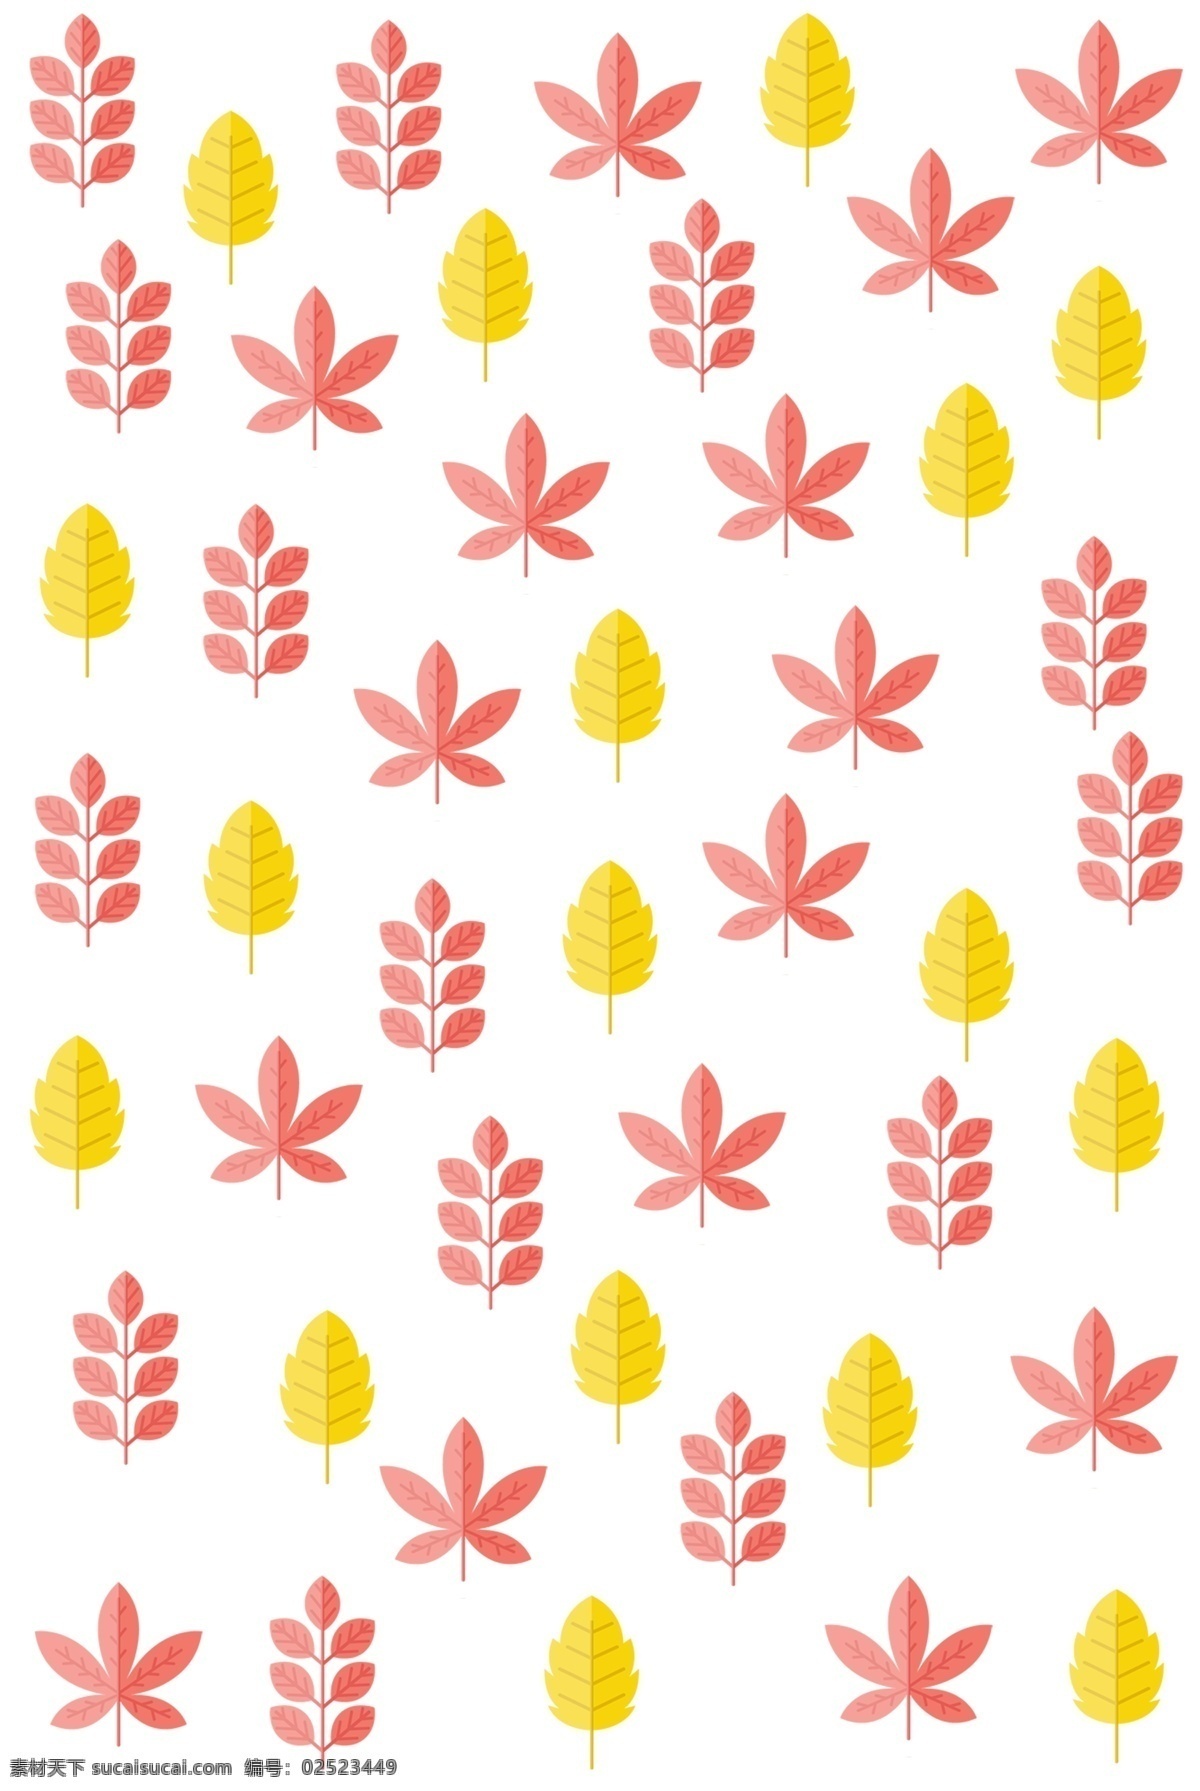 手绘 叶子 底纹 插画 手绘叶子 漂亮的叶子 红色的树叶 红色枫叶 叶子底纹插画 黄色的叶子 秋季树叶